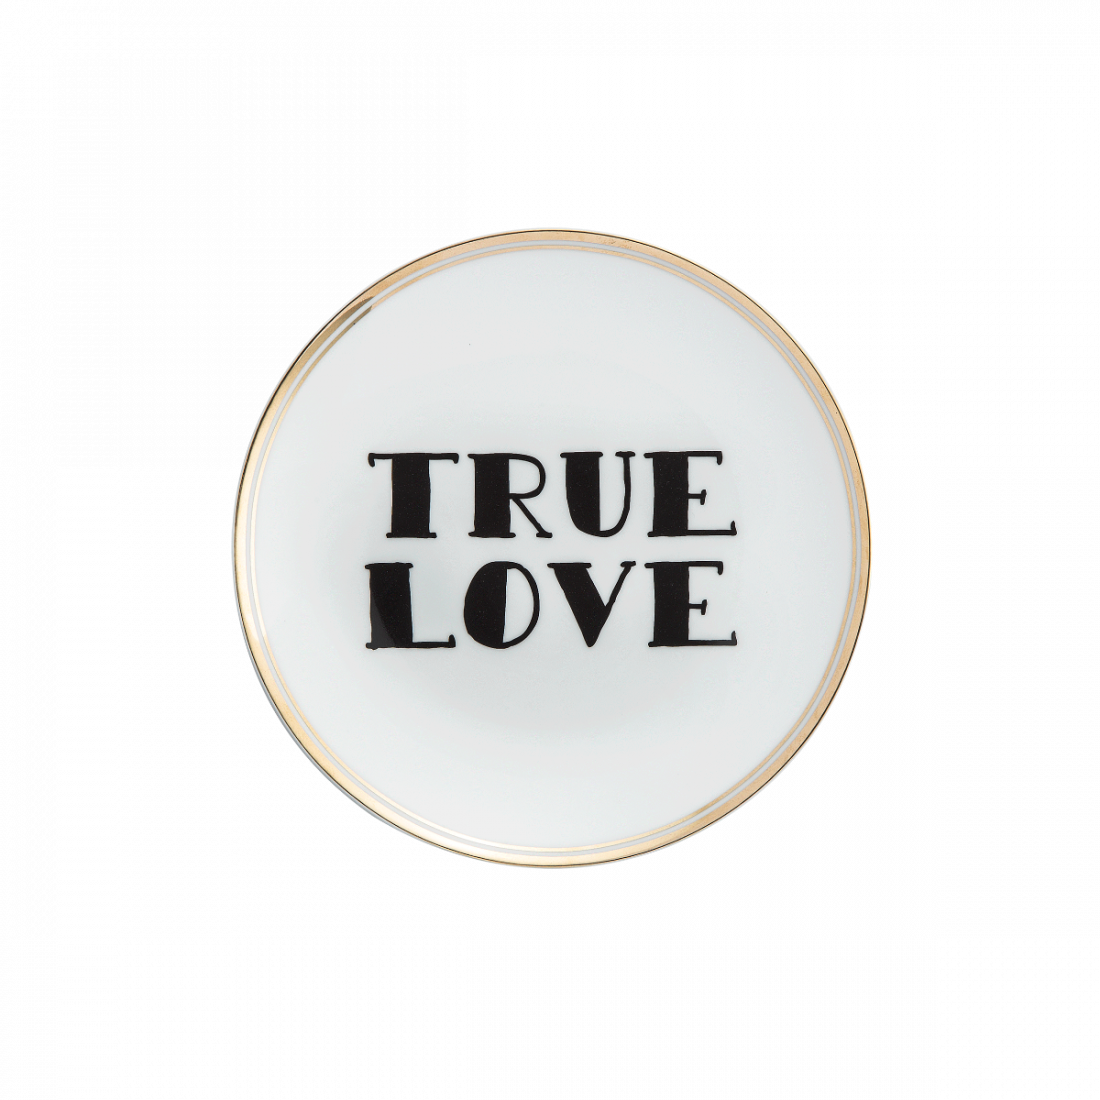 True Love - Assiette décorative en porcelaine blanche avec liseret doré et inscription  - Bitossi Home